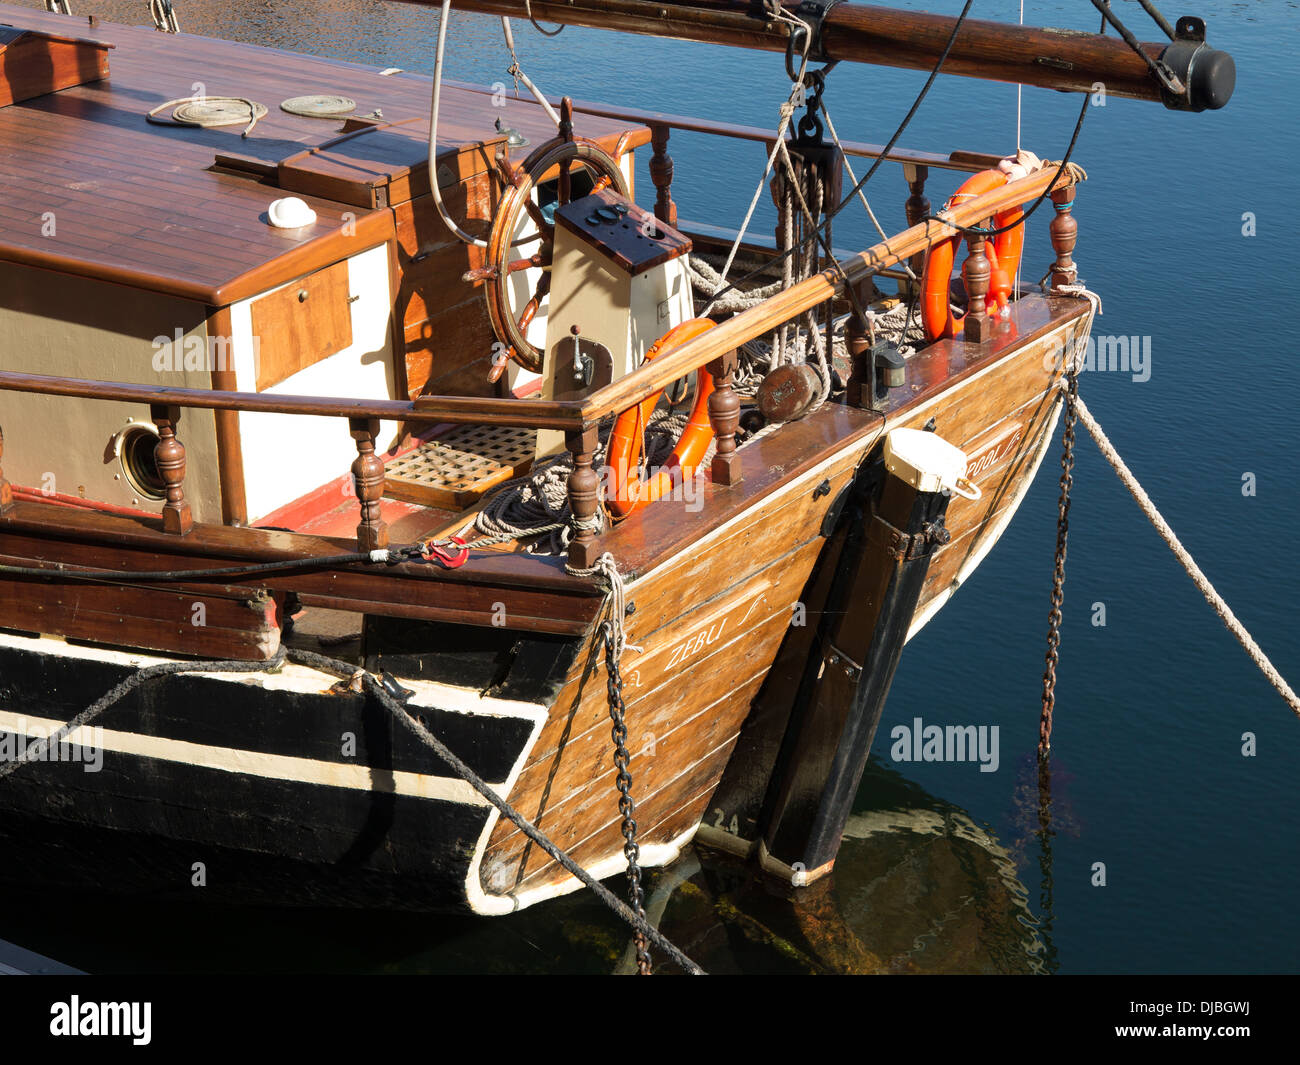 Poppa della barca immagini e fotografie stock ad alta risoluzione - Alamy